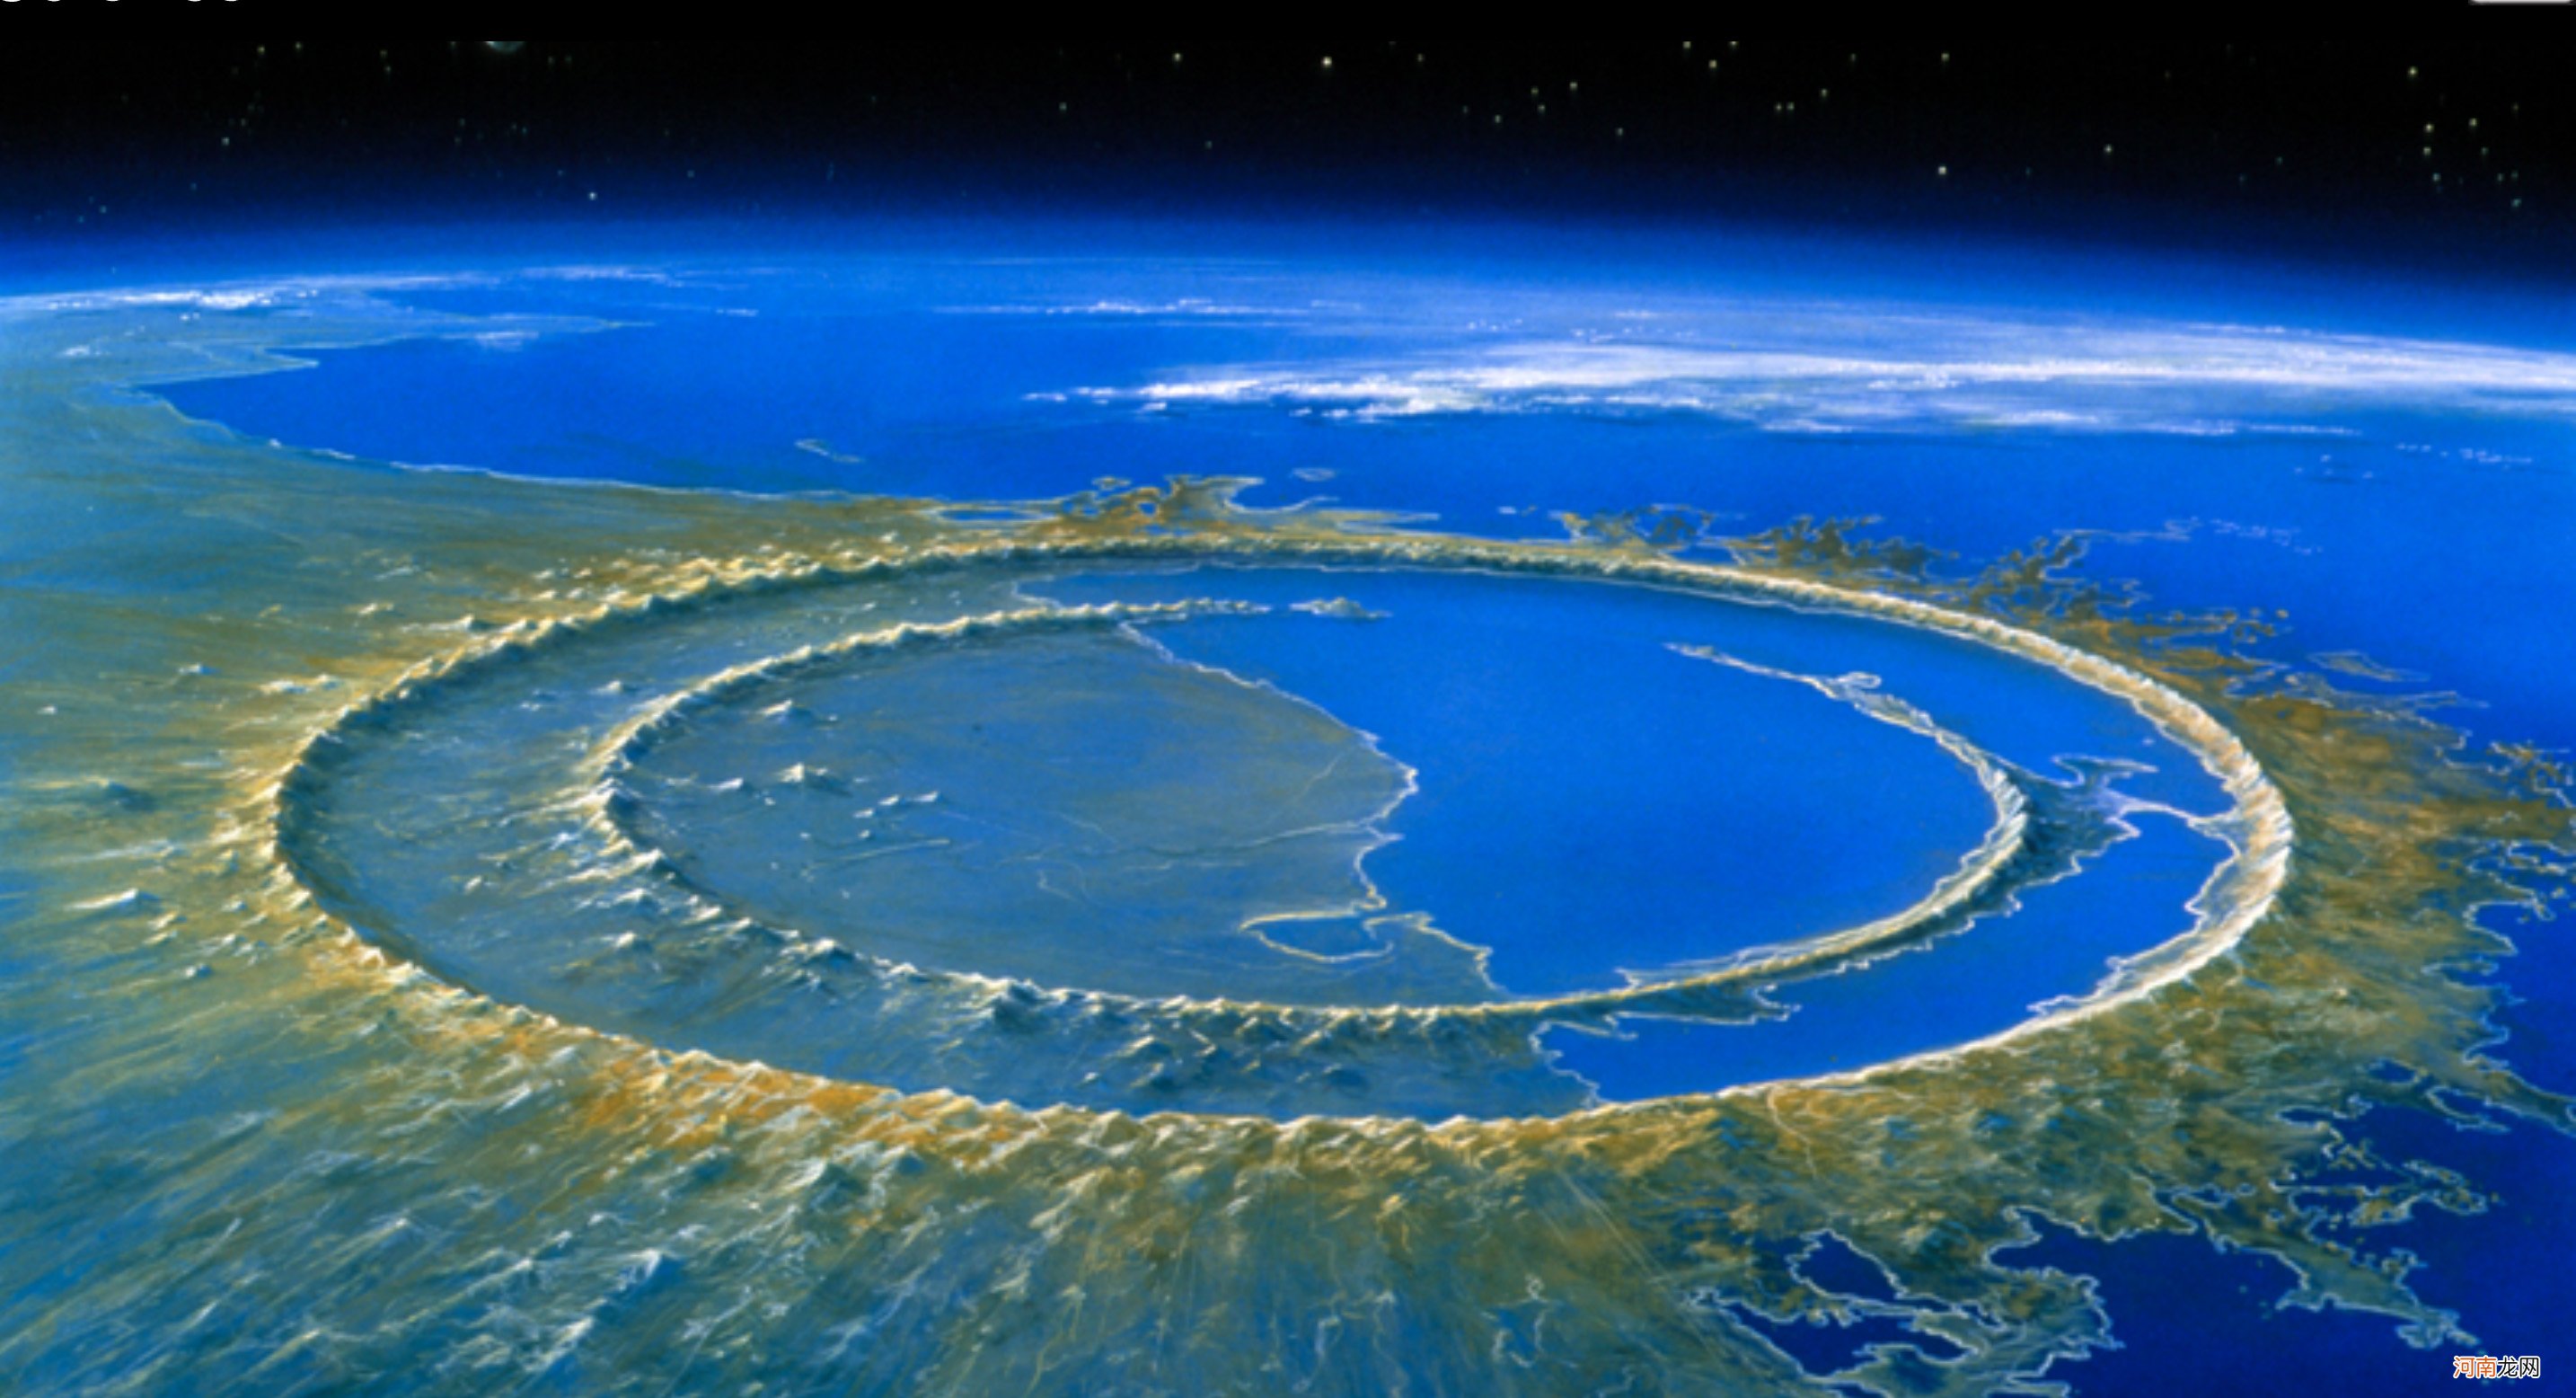 拥有让恐龙直接灭绝的威力 希克苏鲁伯陨石坑是世界十大陨石坑